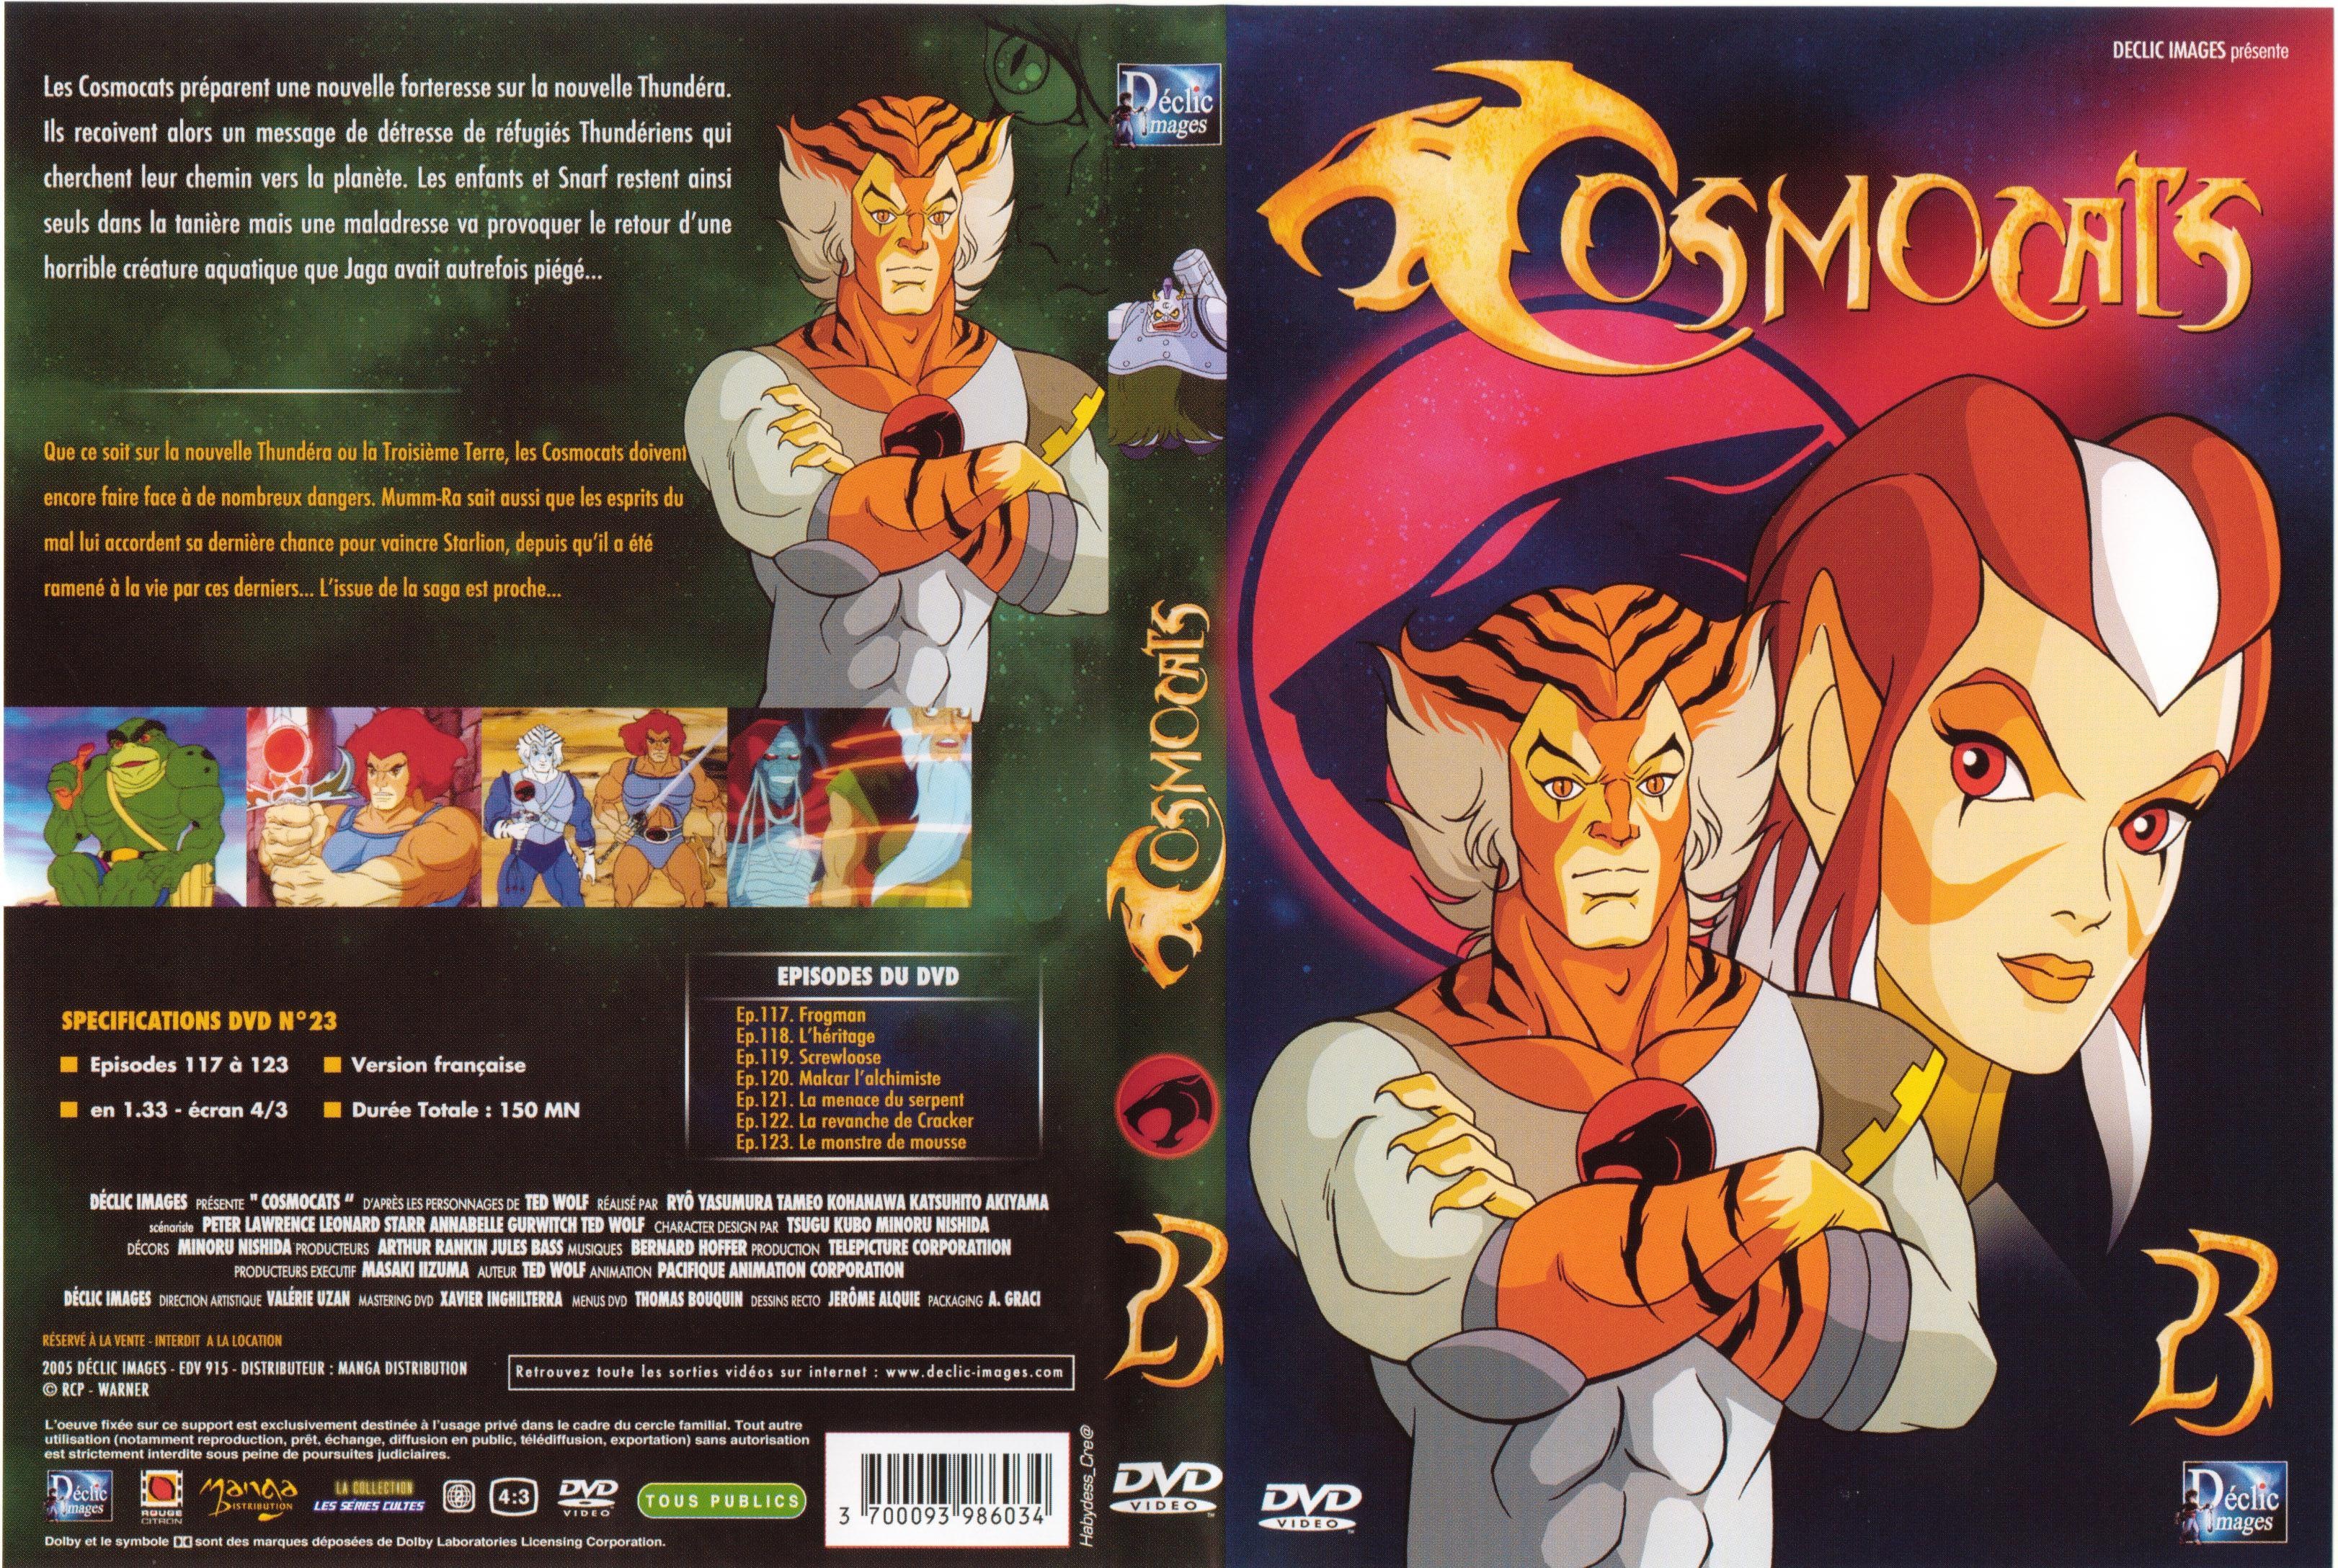 Jaquette DVD Cosmocats vol 23